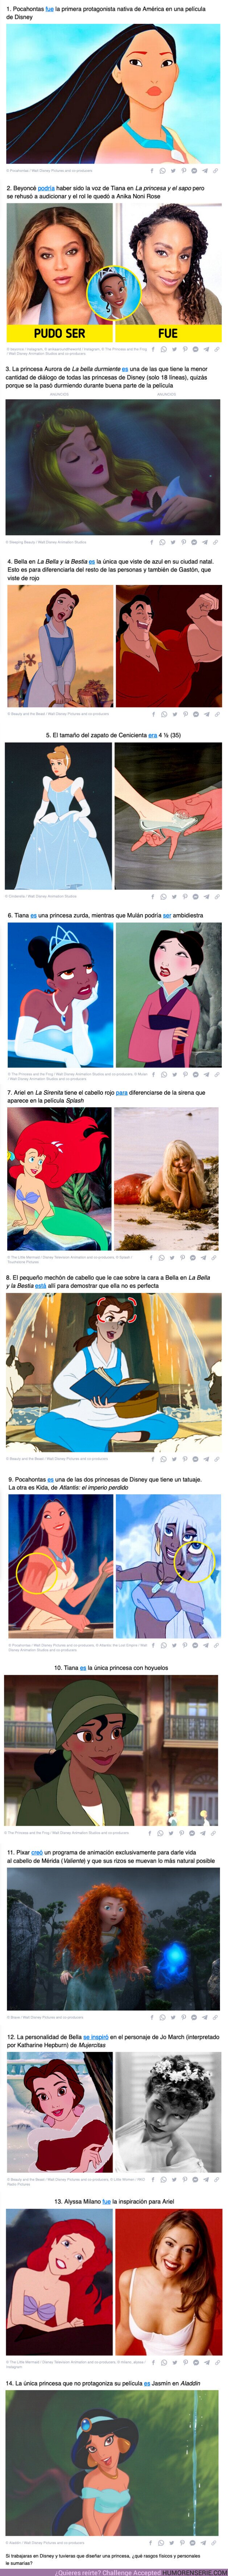 105212 - GALERÍA: 14 Detalles escondidos sobre las princesas de Disney que nos hacen amarlas aún más